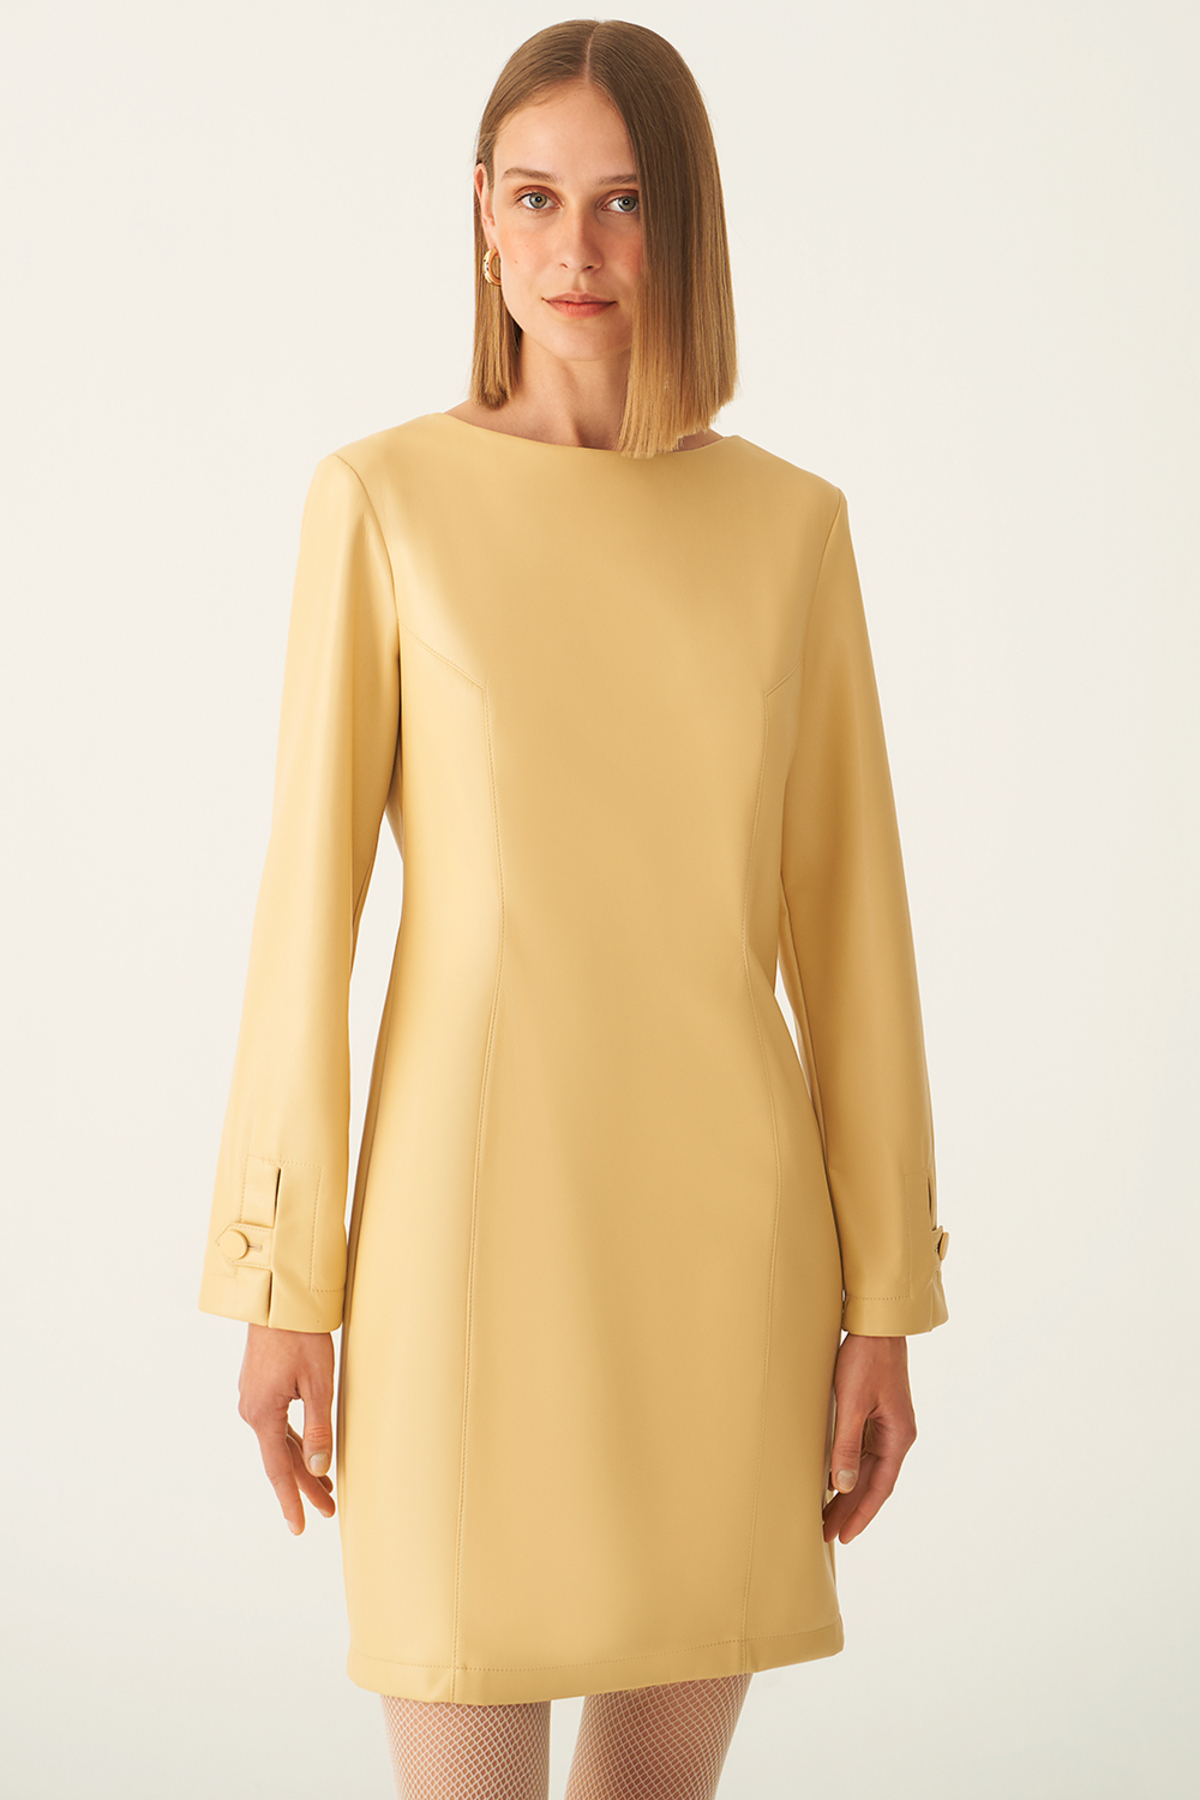 Платье Arleths стандартного кроя с вырезом лодочкой выше колена медового цвета Perspective, желтый